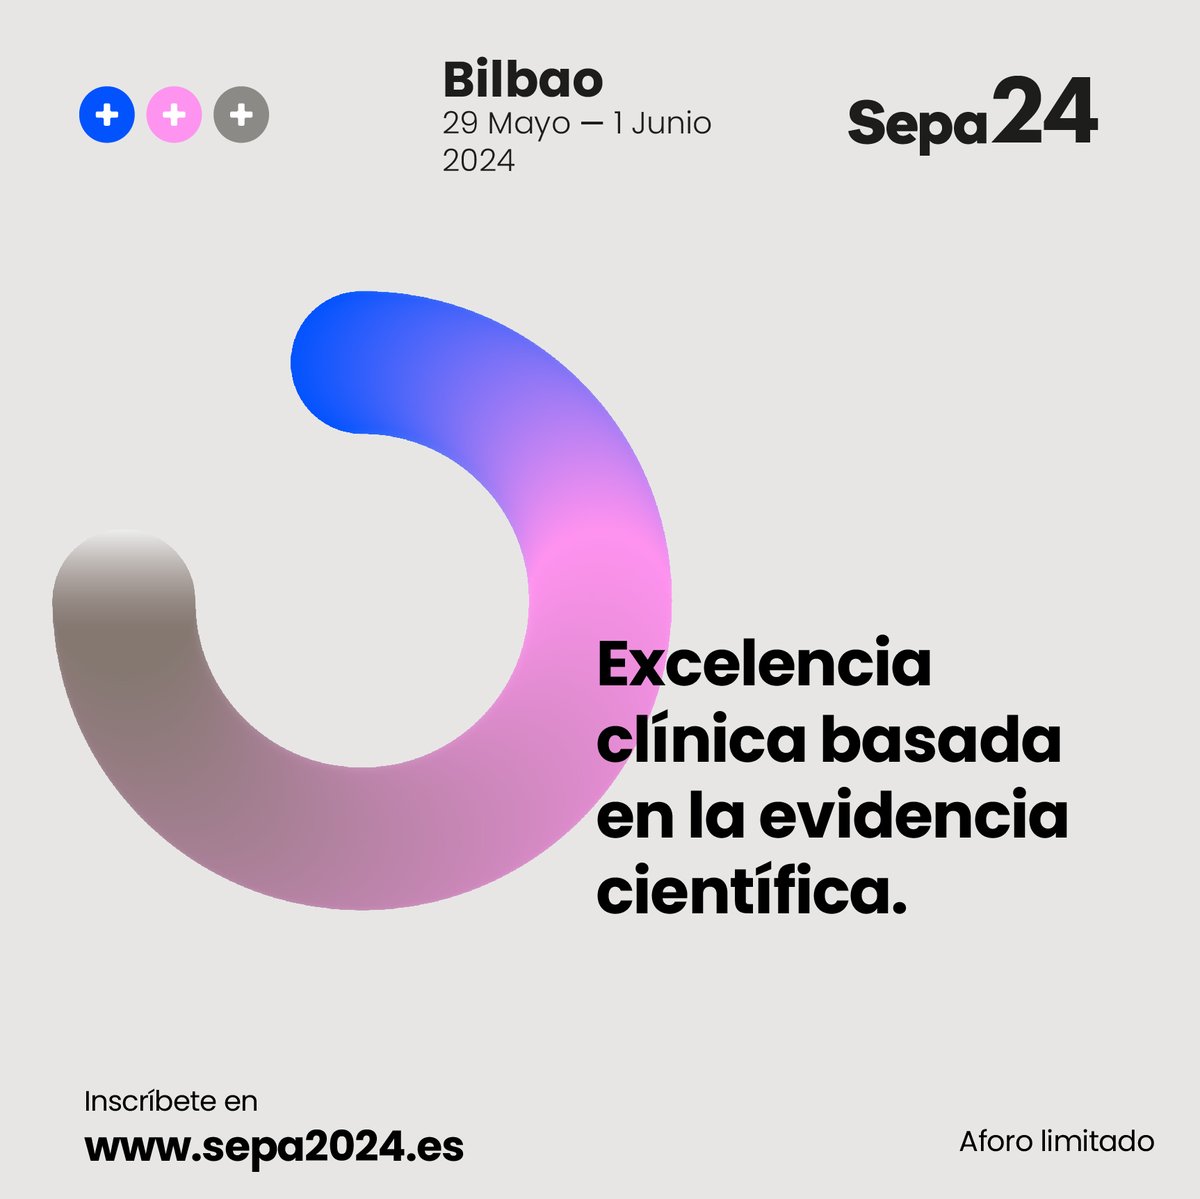 ✍🏻Inscríbete a SEPA Bilbao con tarifa reducida hasta el 21 de marzo en sepa2024.es ⏩️Una cita de referencia para la Periodoncia internacional y la Odontología Española, que abordará todos conceptos y técnicas en Periodoncia y Terapia de Implantes.